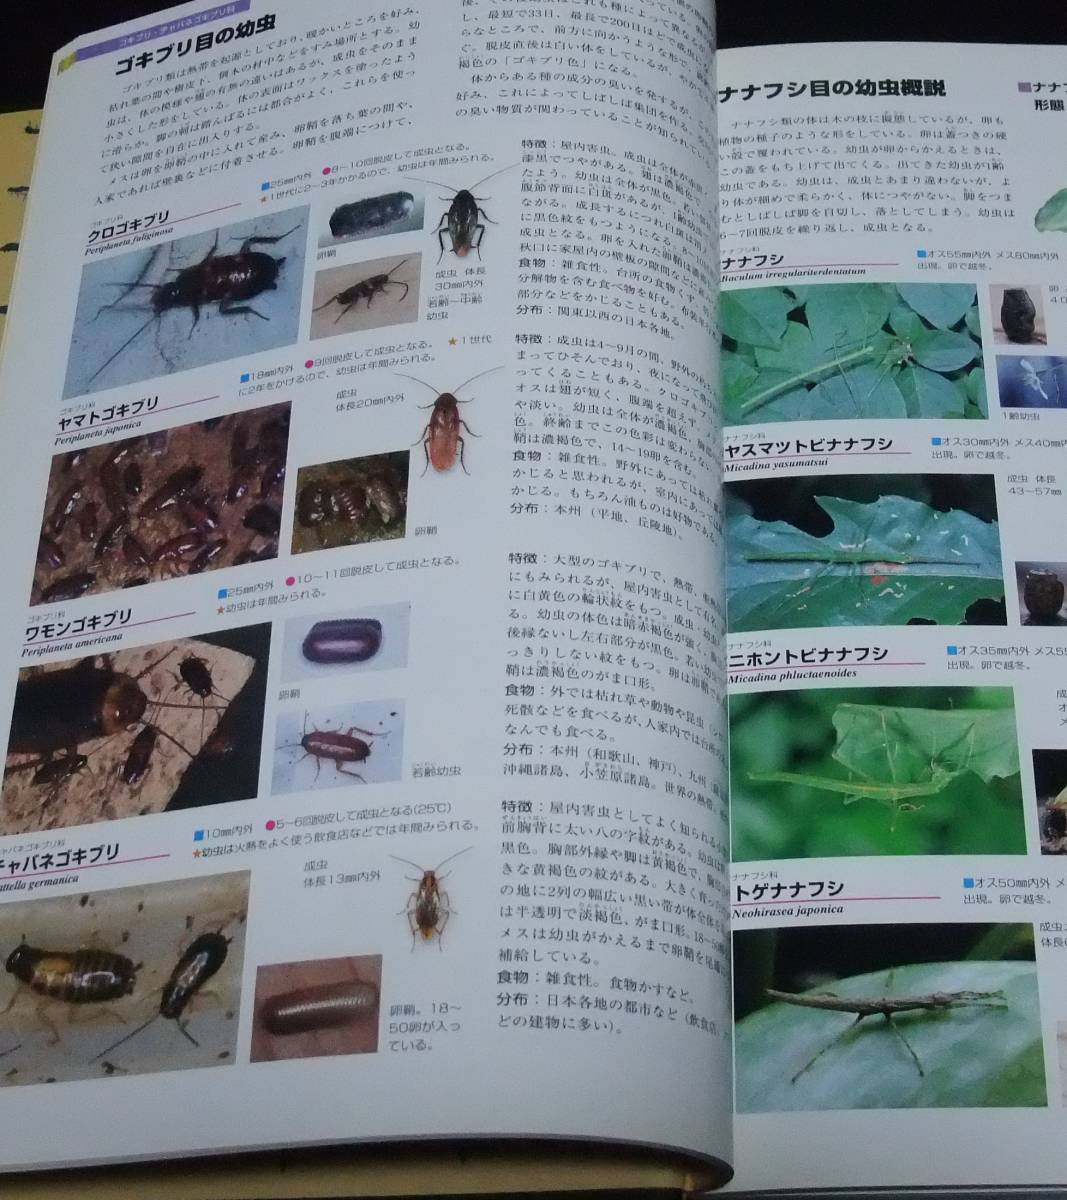 [ Япония производство личинка иллюстрированная книга ] INSECT LARVAE JAPAN